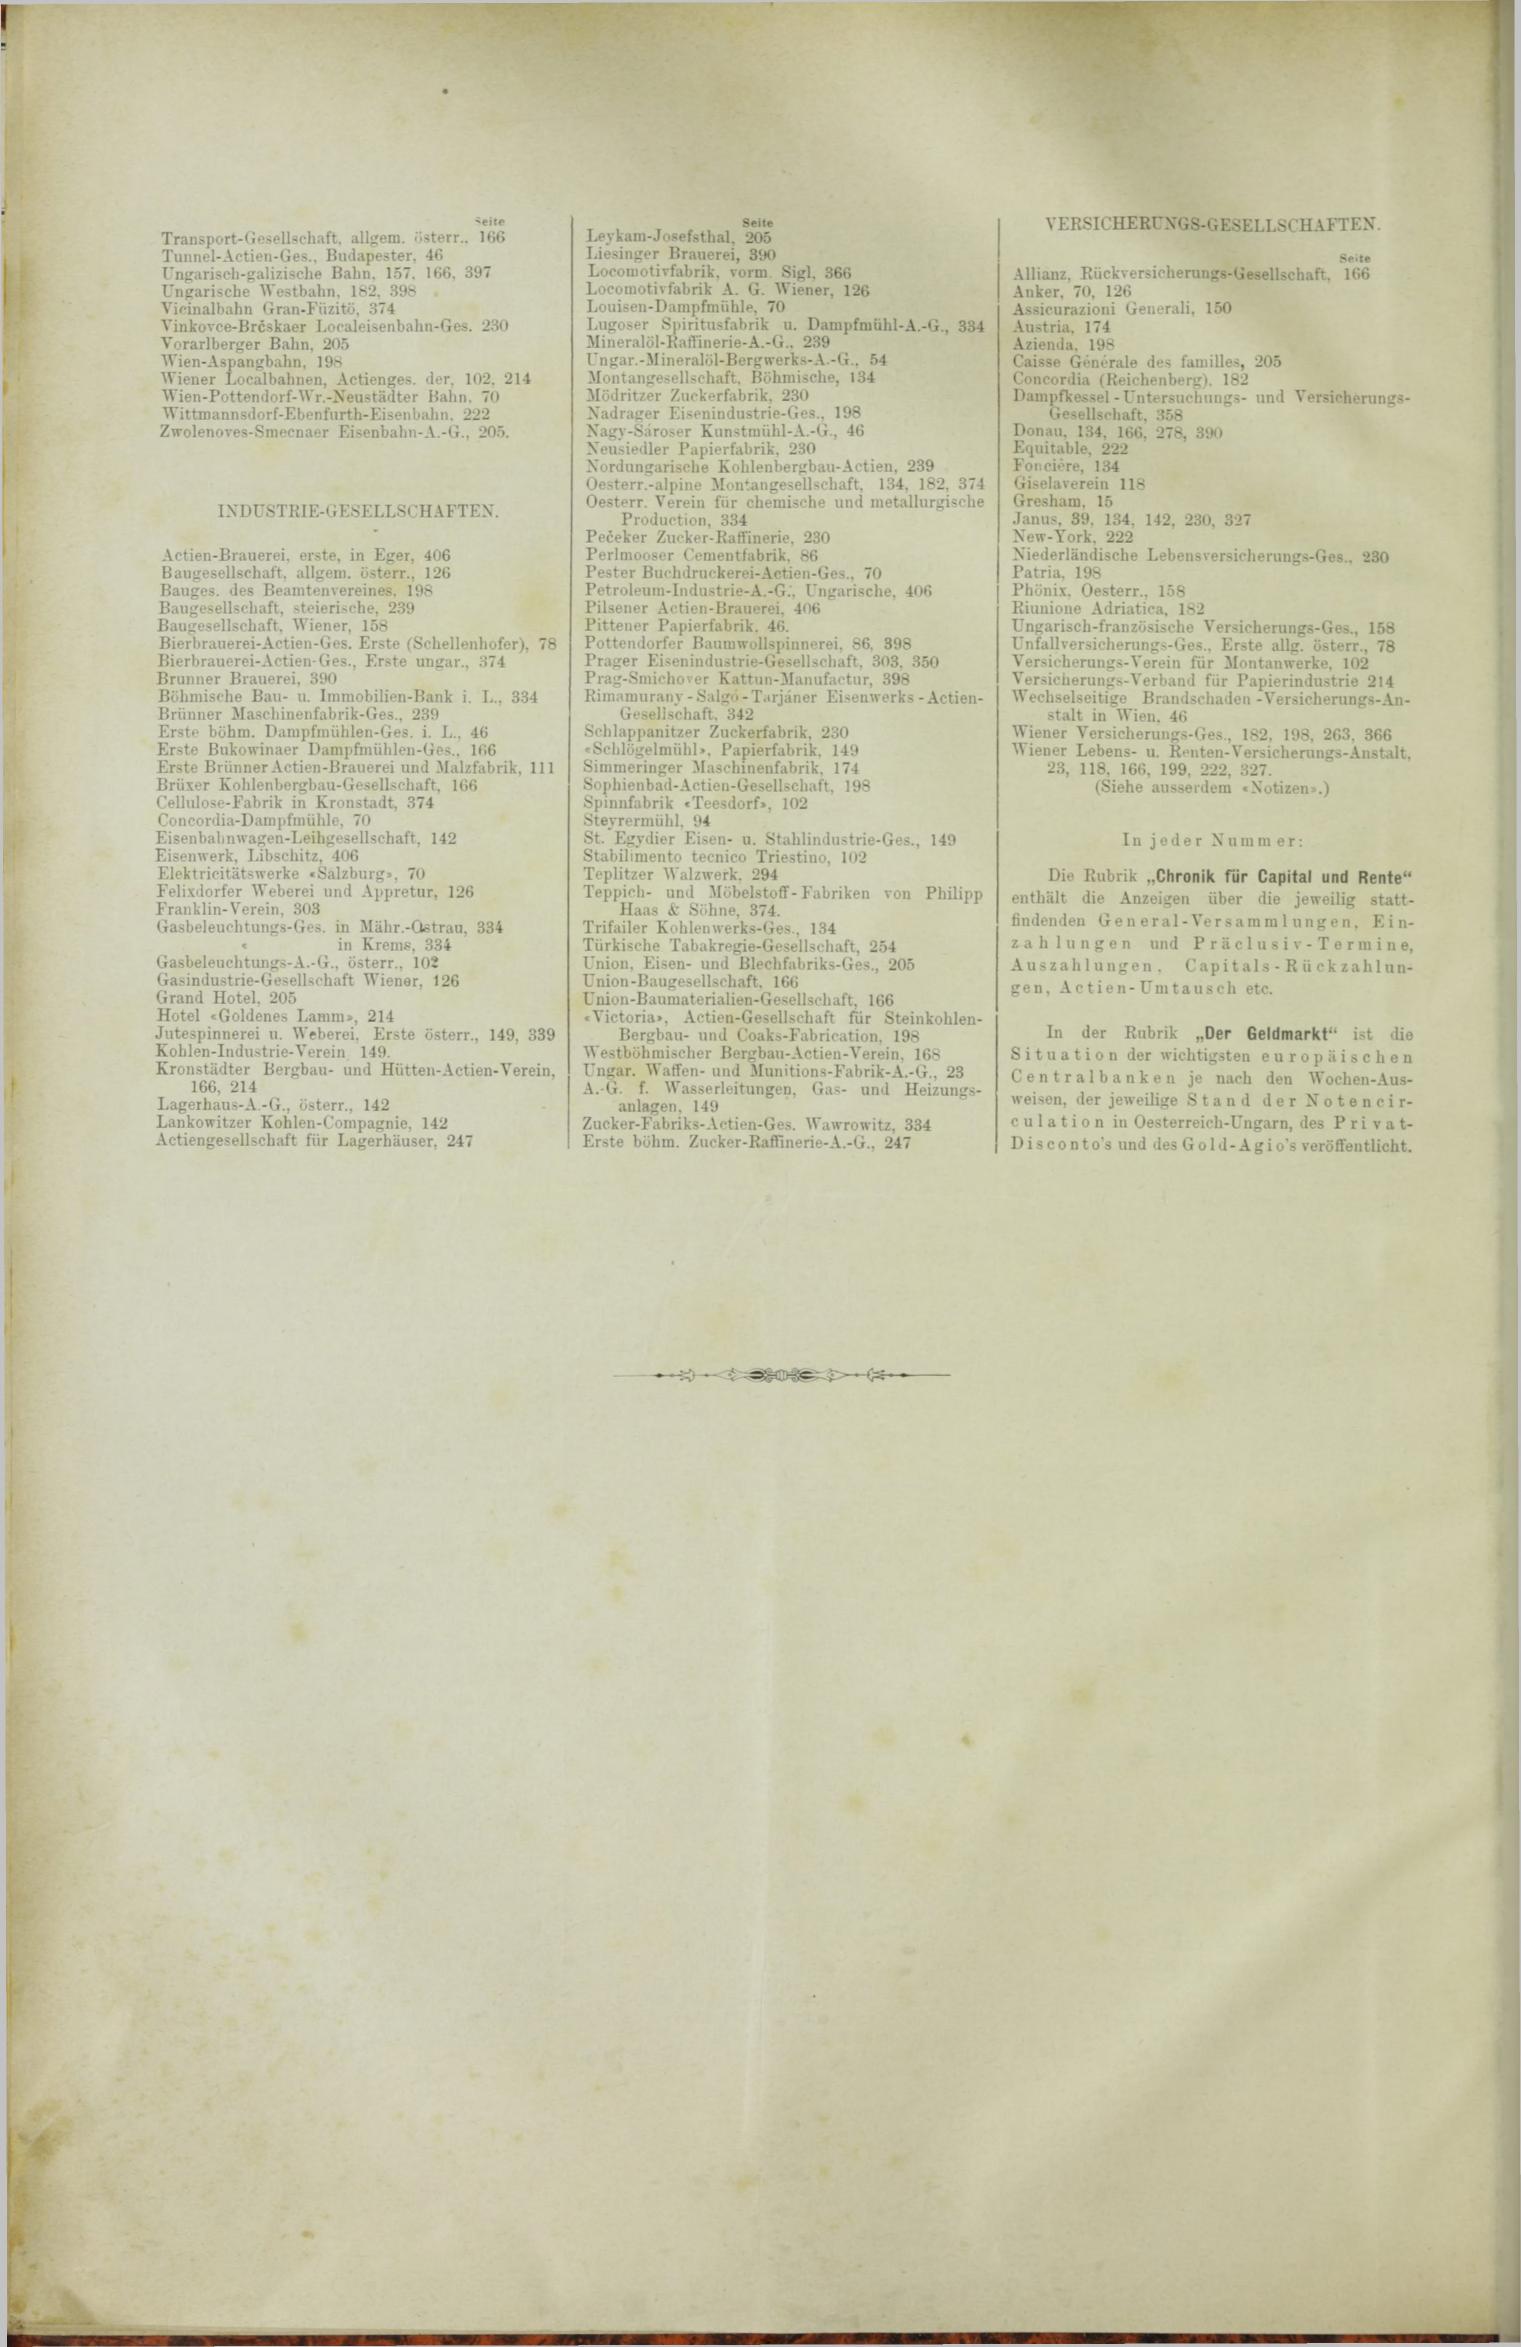 Der Tresor 06.12.1888 - Seite 12